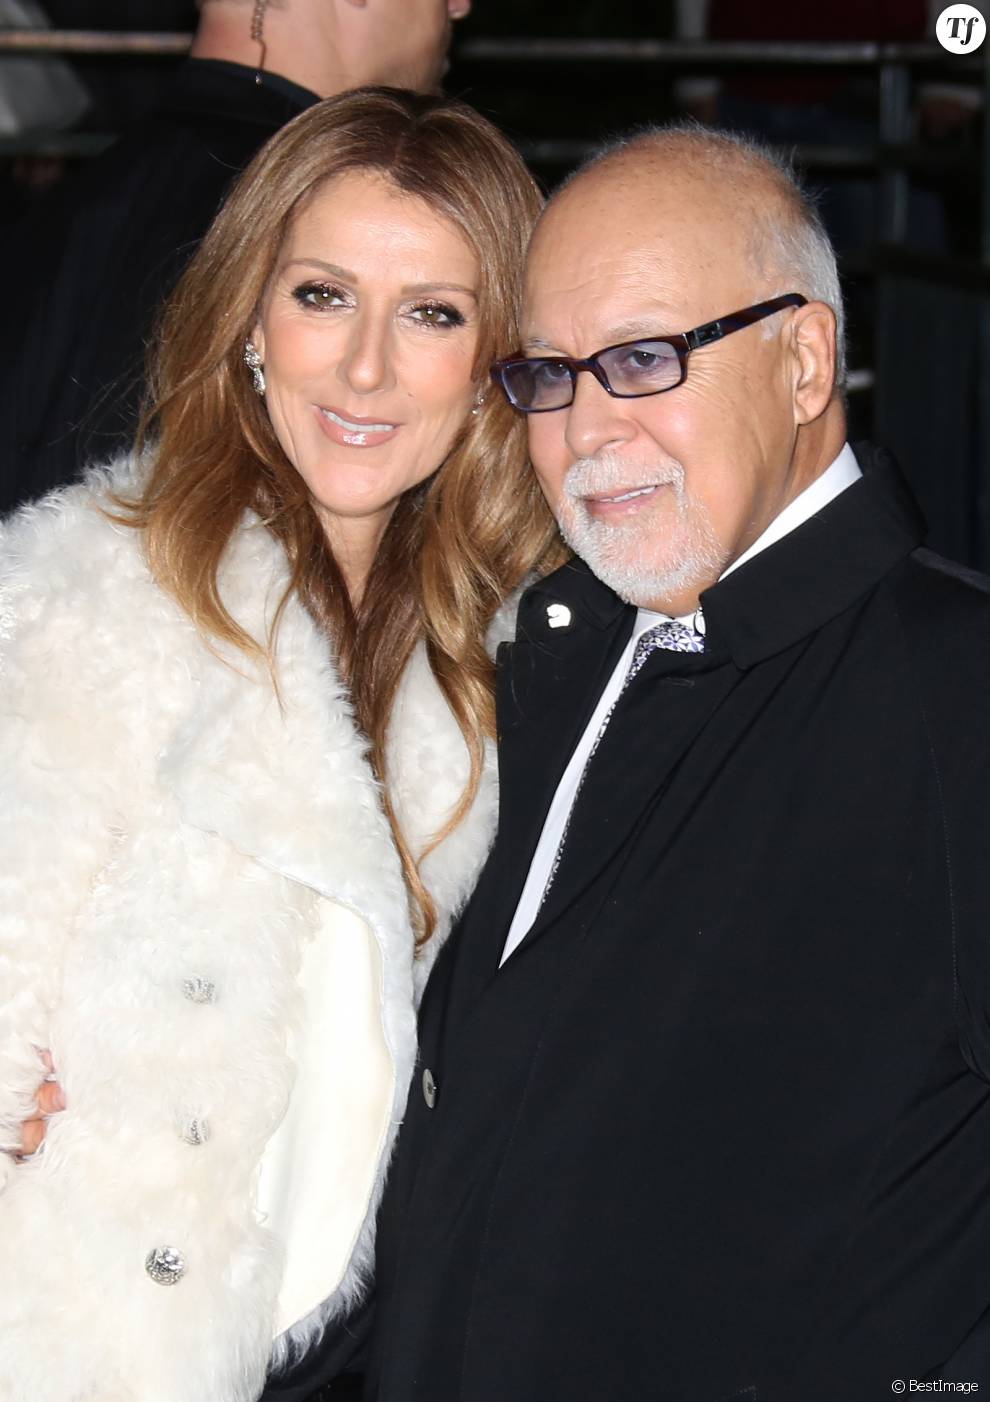   Celine Dion et son mari Rene Angelil arrivent a l&#039;enregistrement de l&#039;emission &quot;Vivement dimanche&quot; au studio Gabriel a Paris le 13 novembre 2013.  